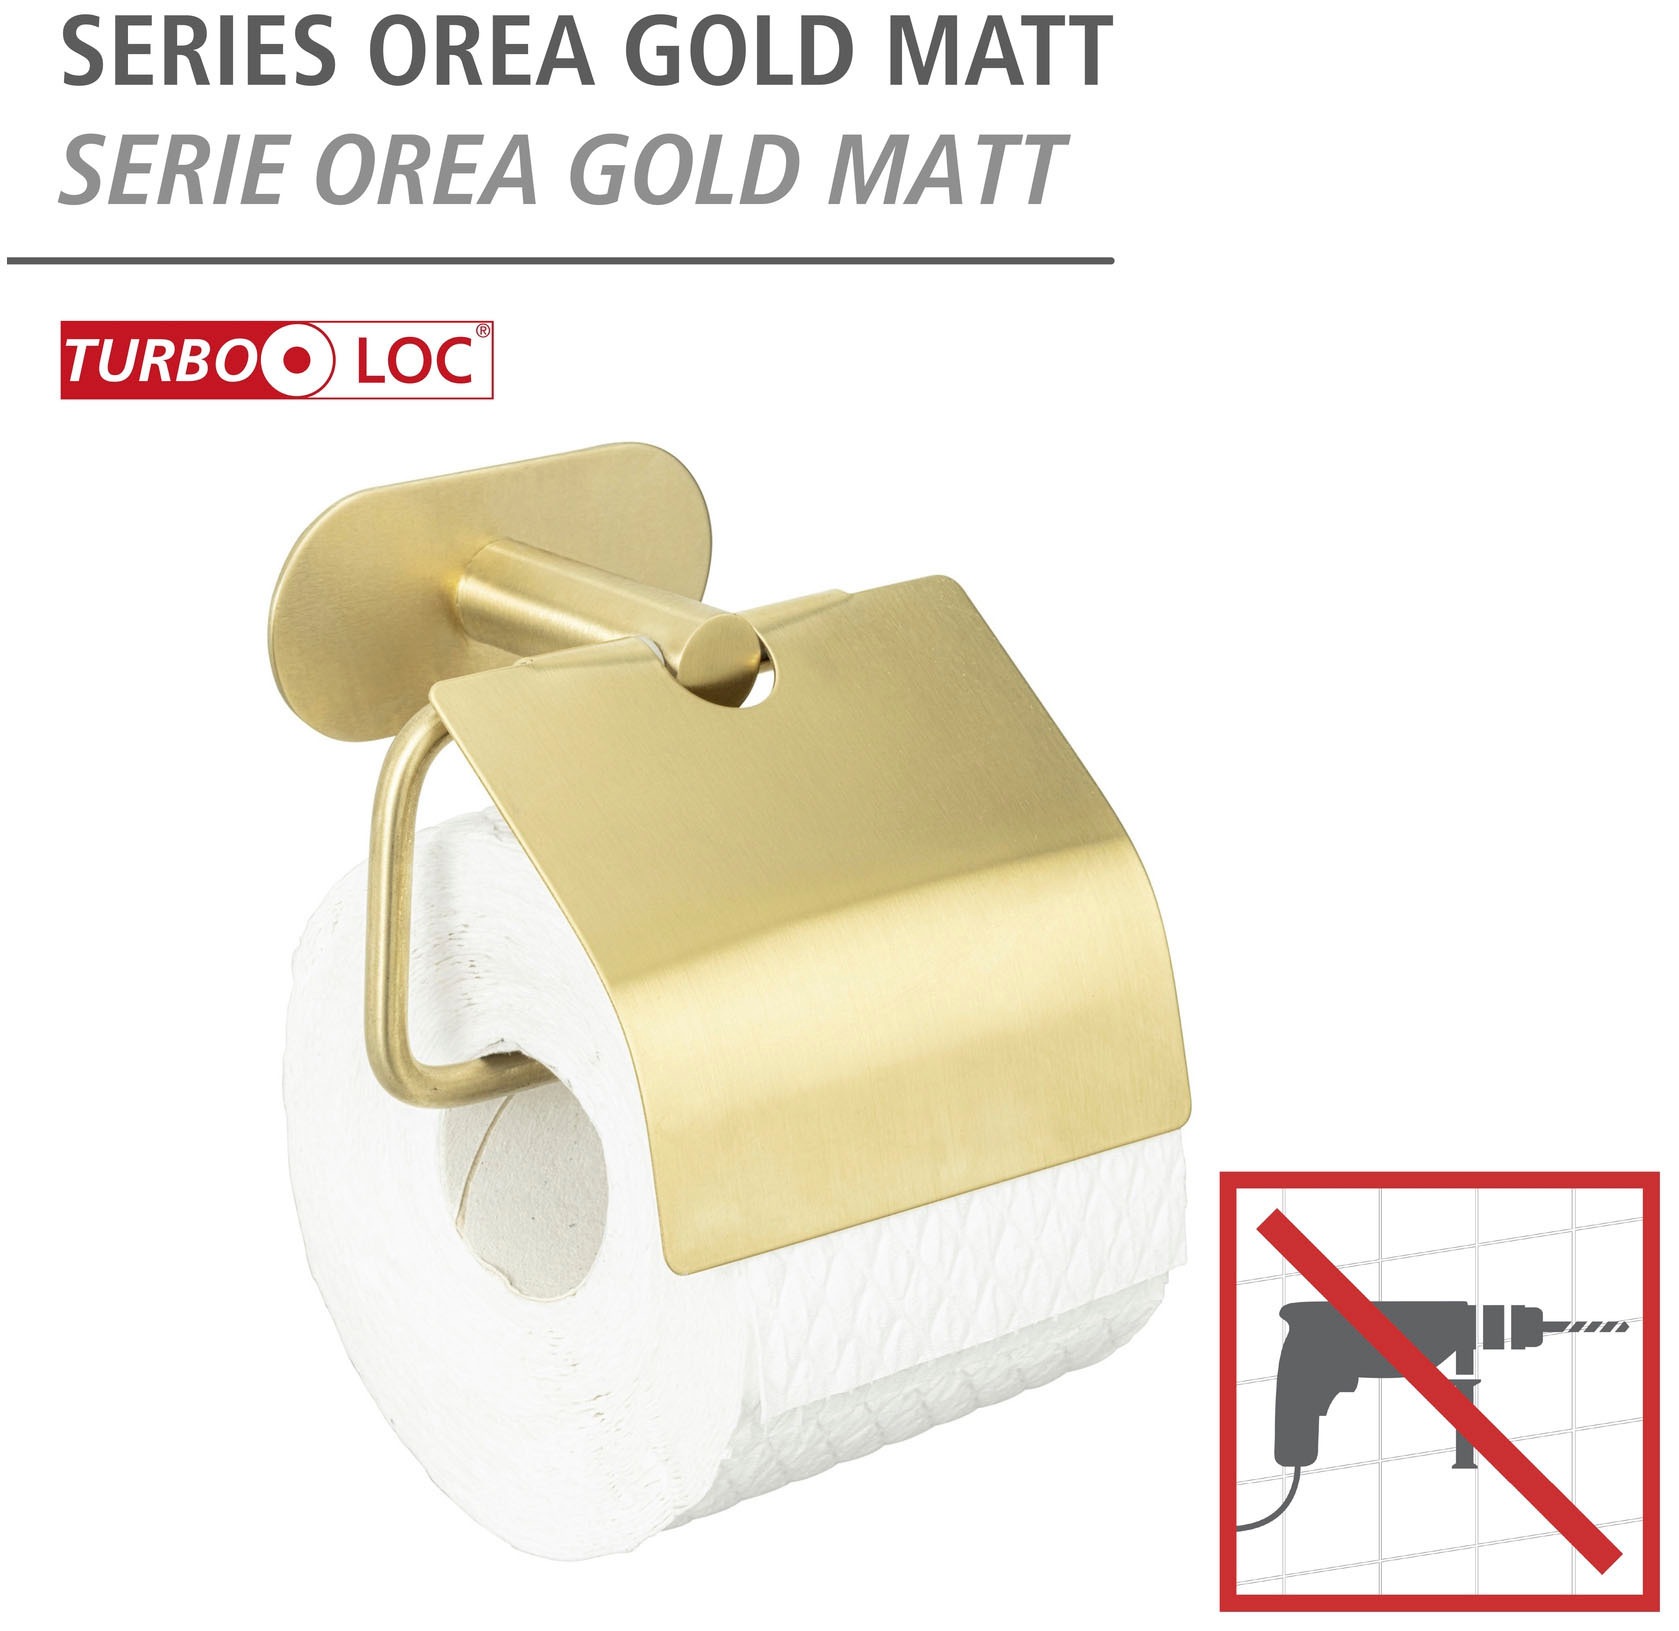 WENKO Toilettenpapierhalter »Turbo-Loc®«, mit Deckel, Befestigen ohne Bohren